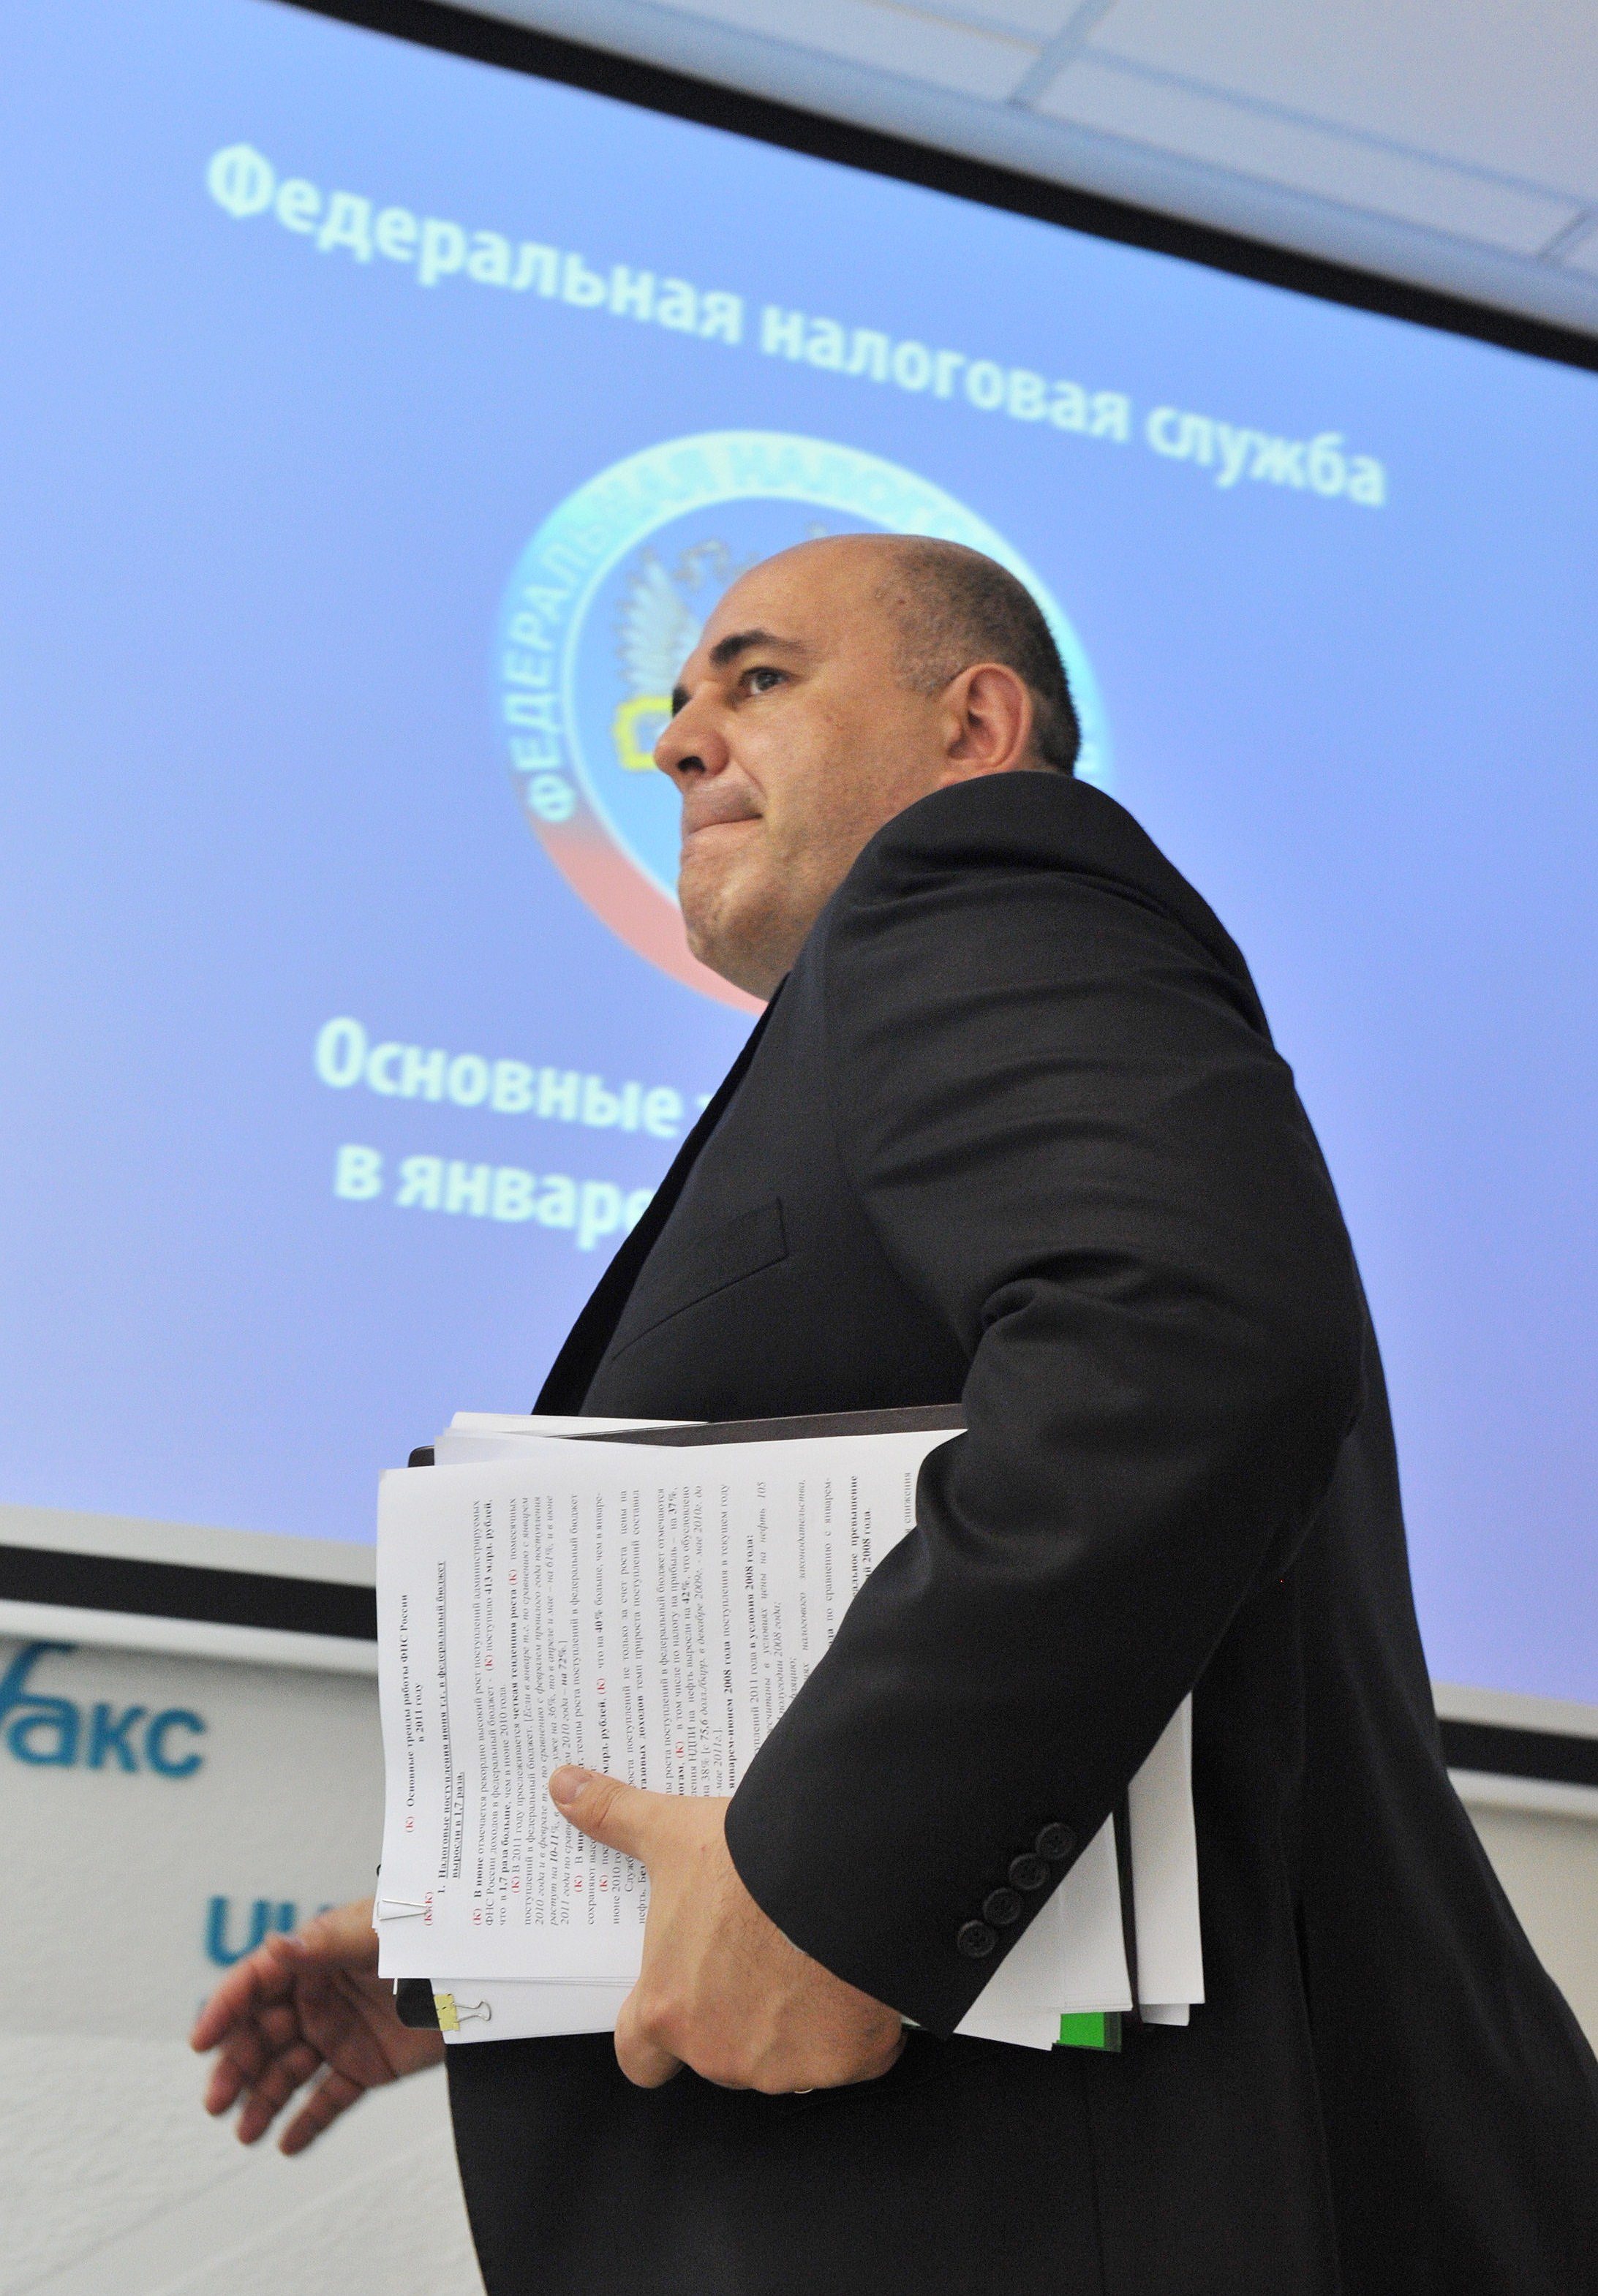 Руководитель ФНС России Михаил Мишустин получает возможность бороться с офшорами по мировым правилам